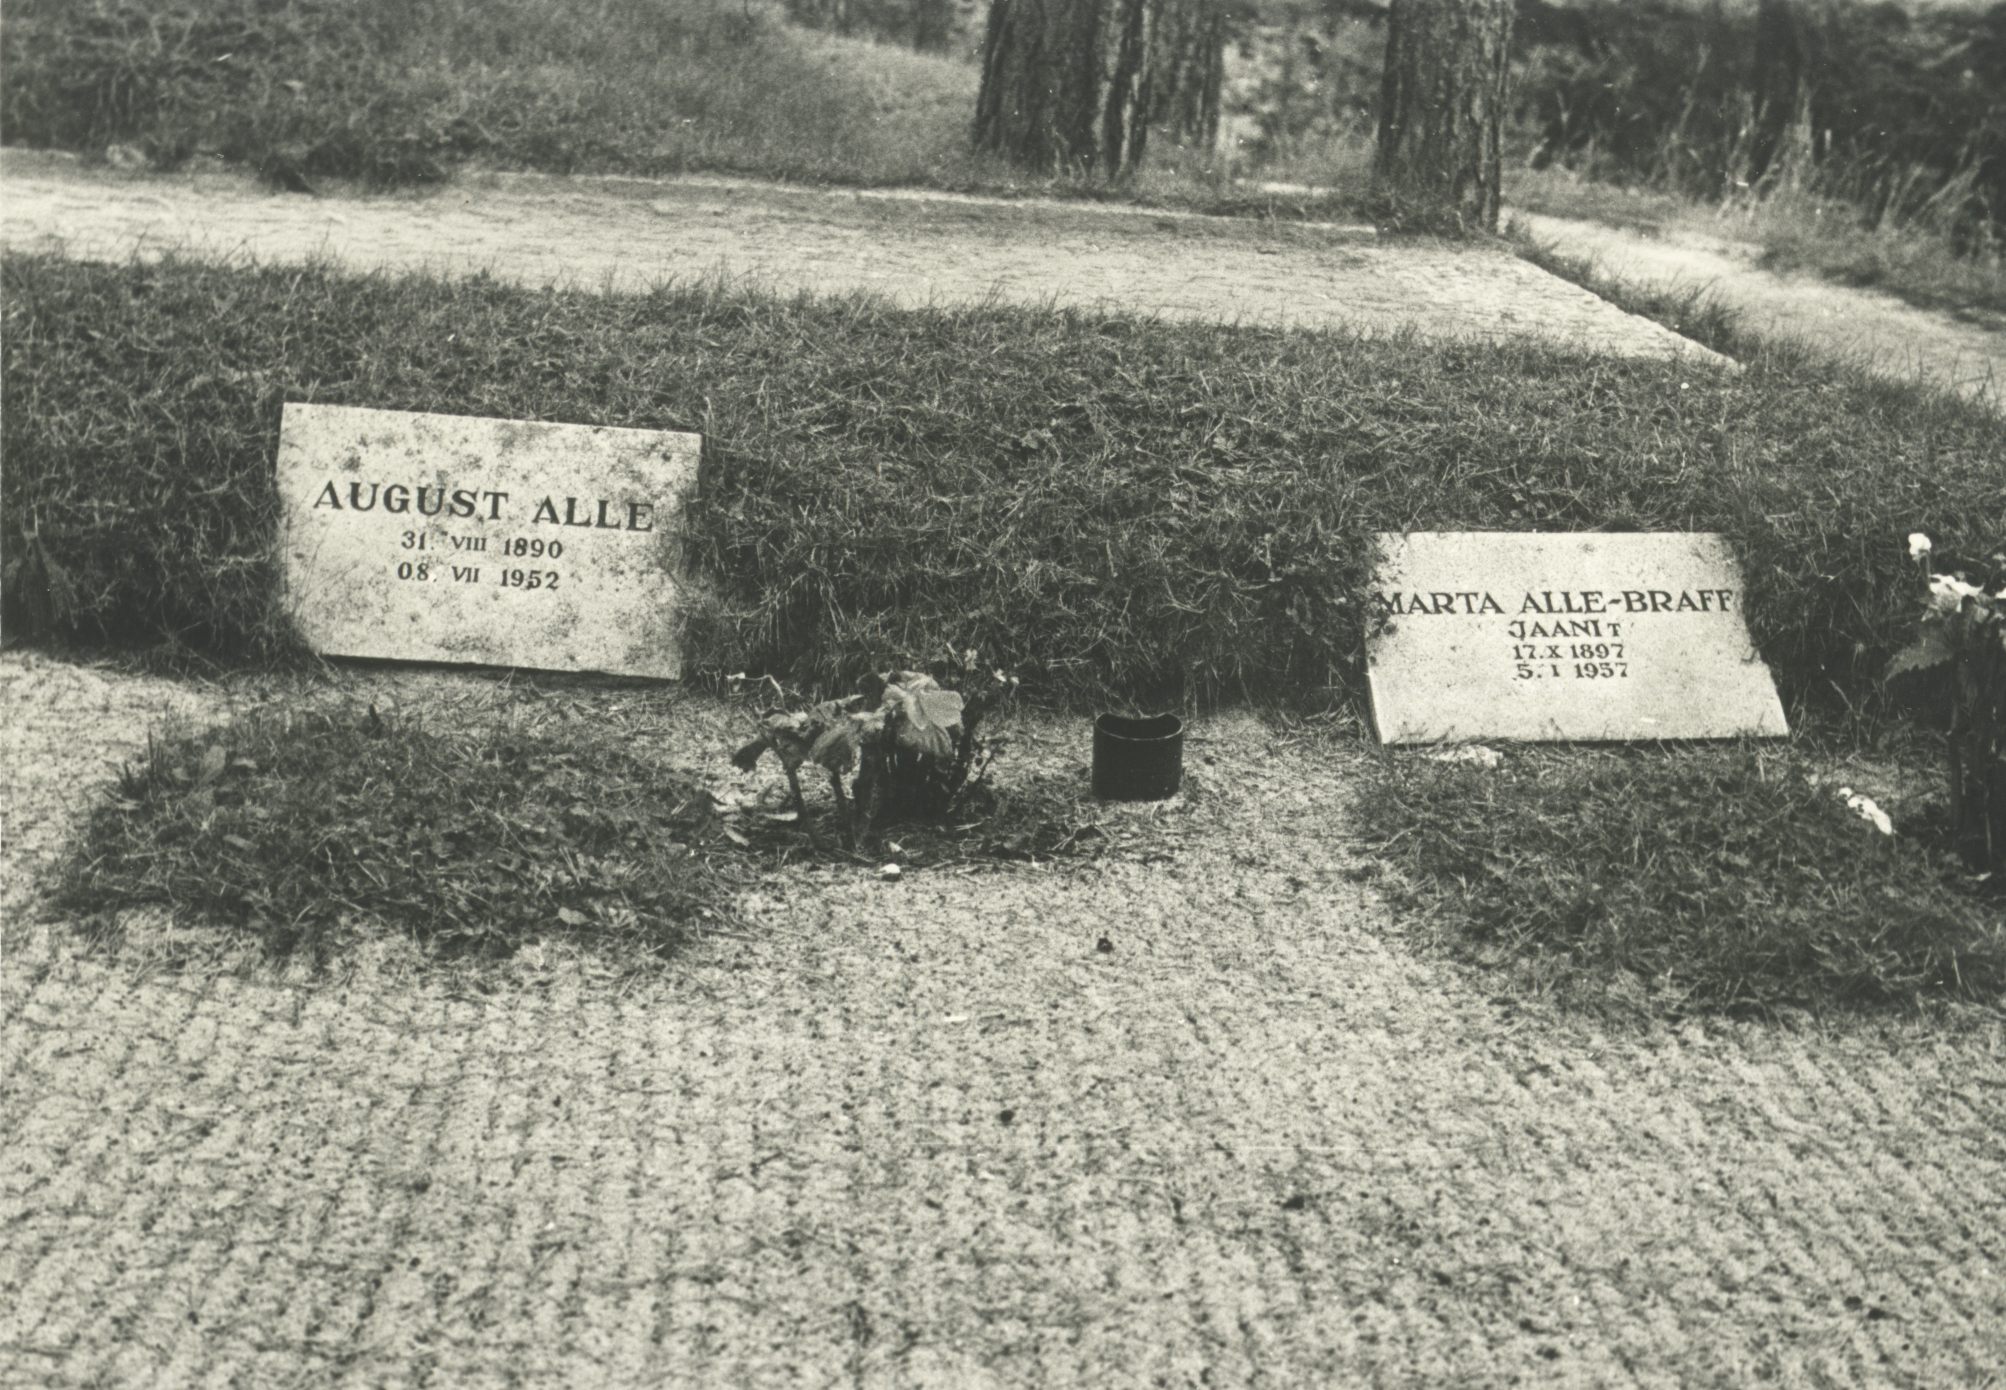 The graves of August Alle and Marta Alle-Braff at the Tallinn Metsakalmist in 1974